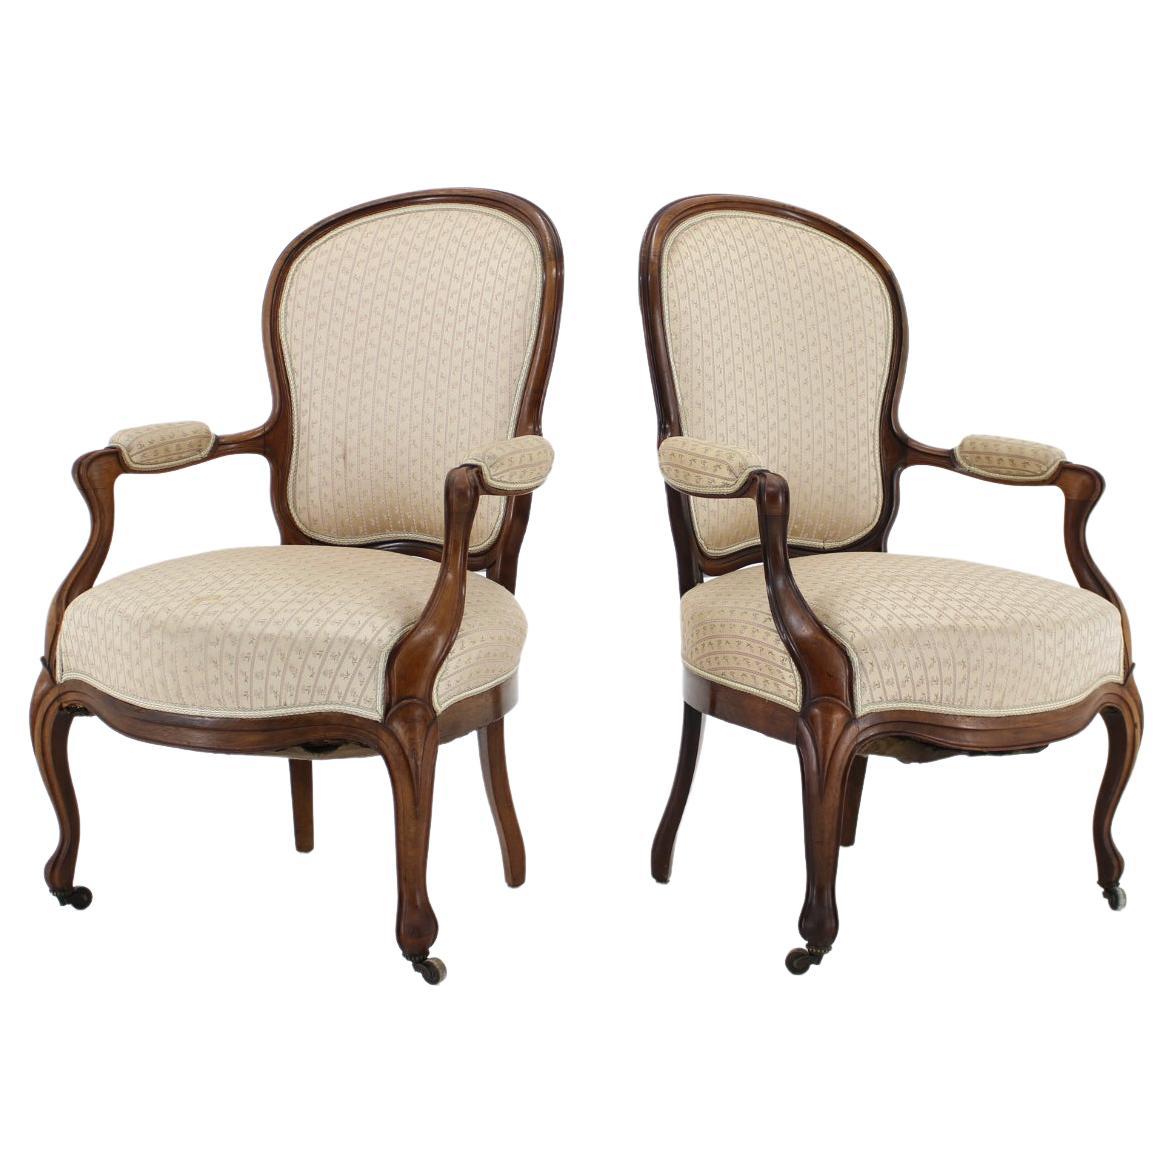 1900s Pair of Original Danish Rococo Chairs